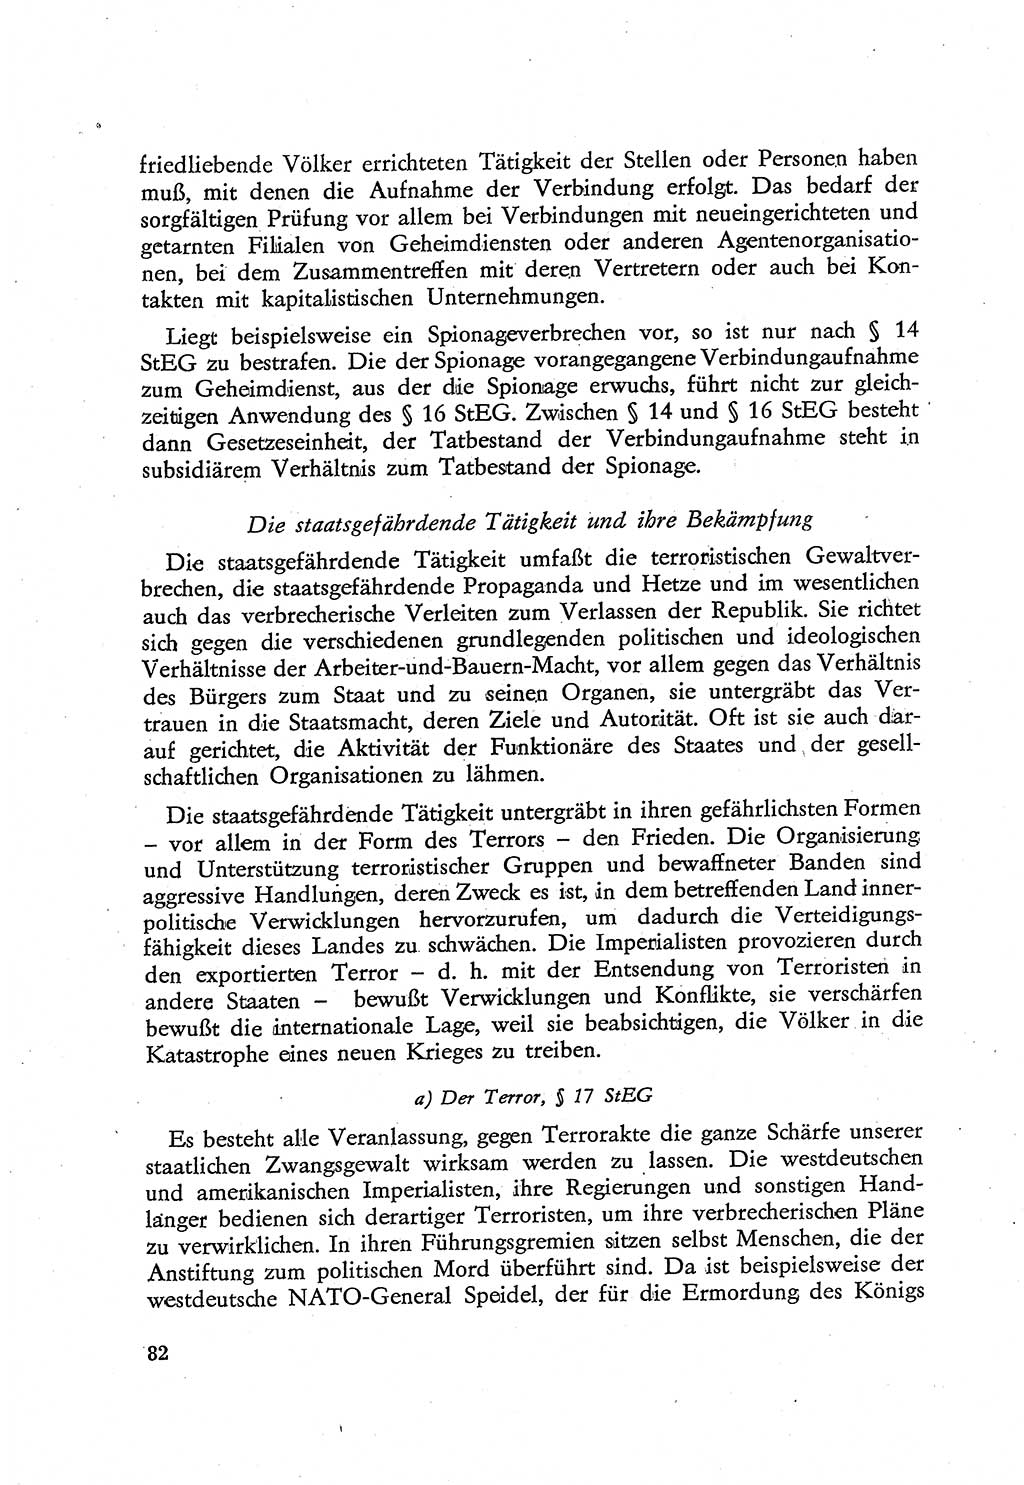 Beiträge zum Strafrecht [Deutsche Demokratische Republik (DDR)], Staatsverbrechen 1959, Seite 82 (Beitr. Strafr. DDR St.-Verbr. 1959, S. 82)